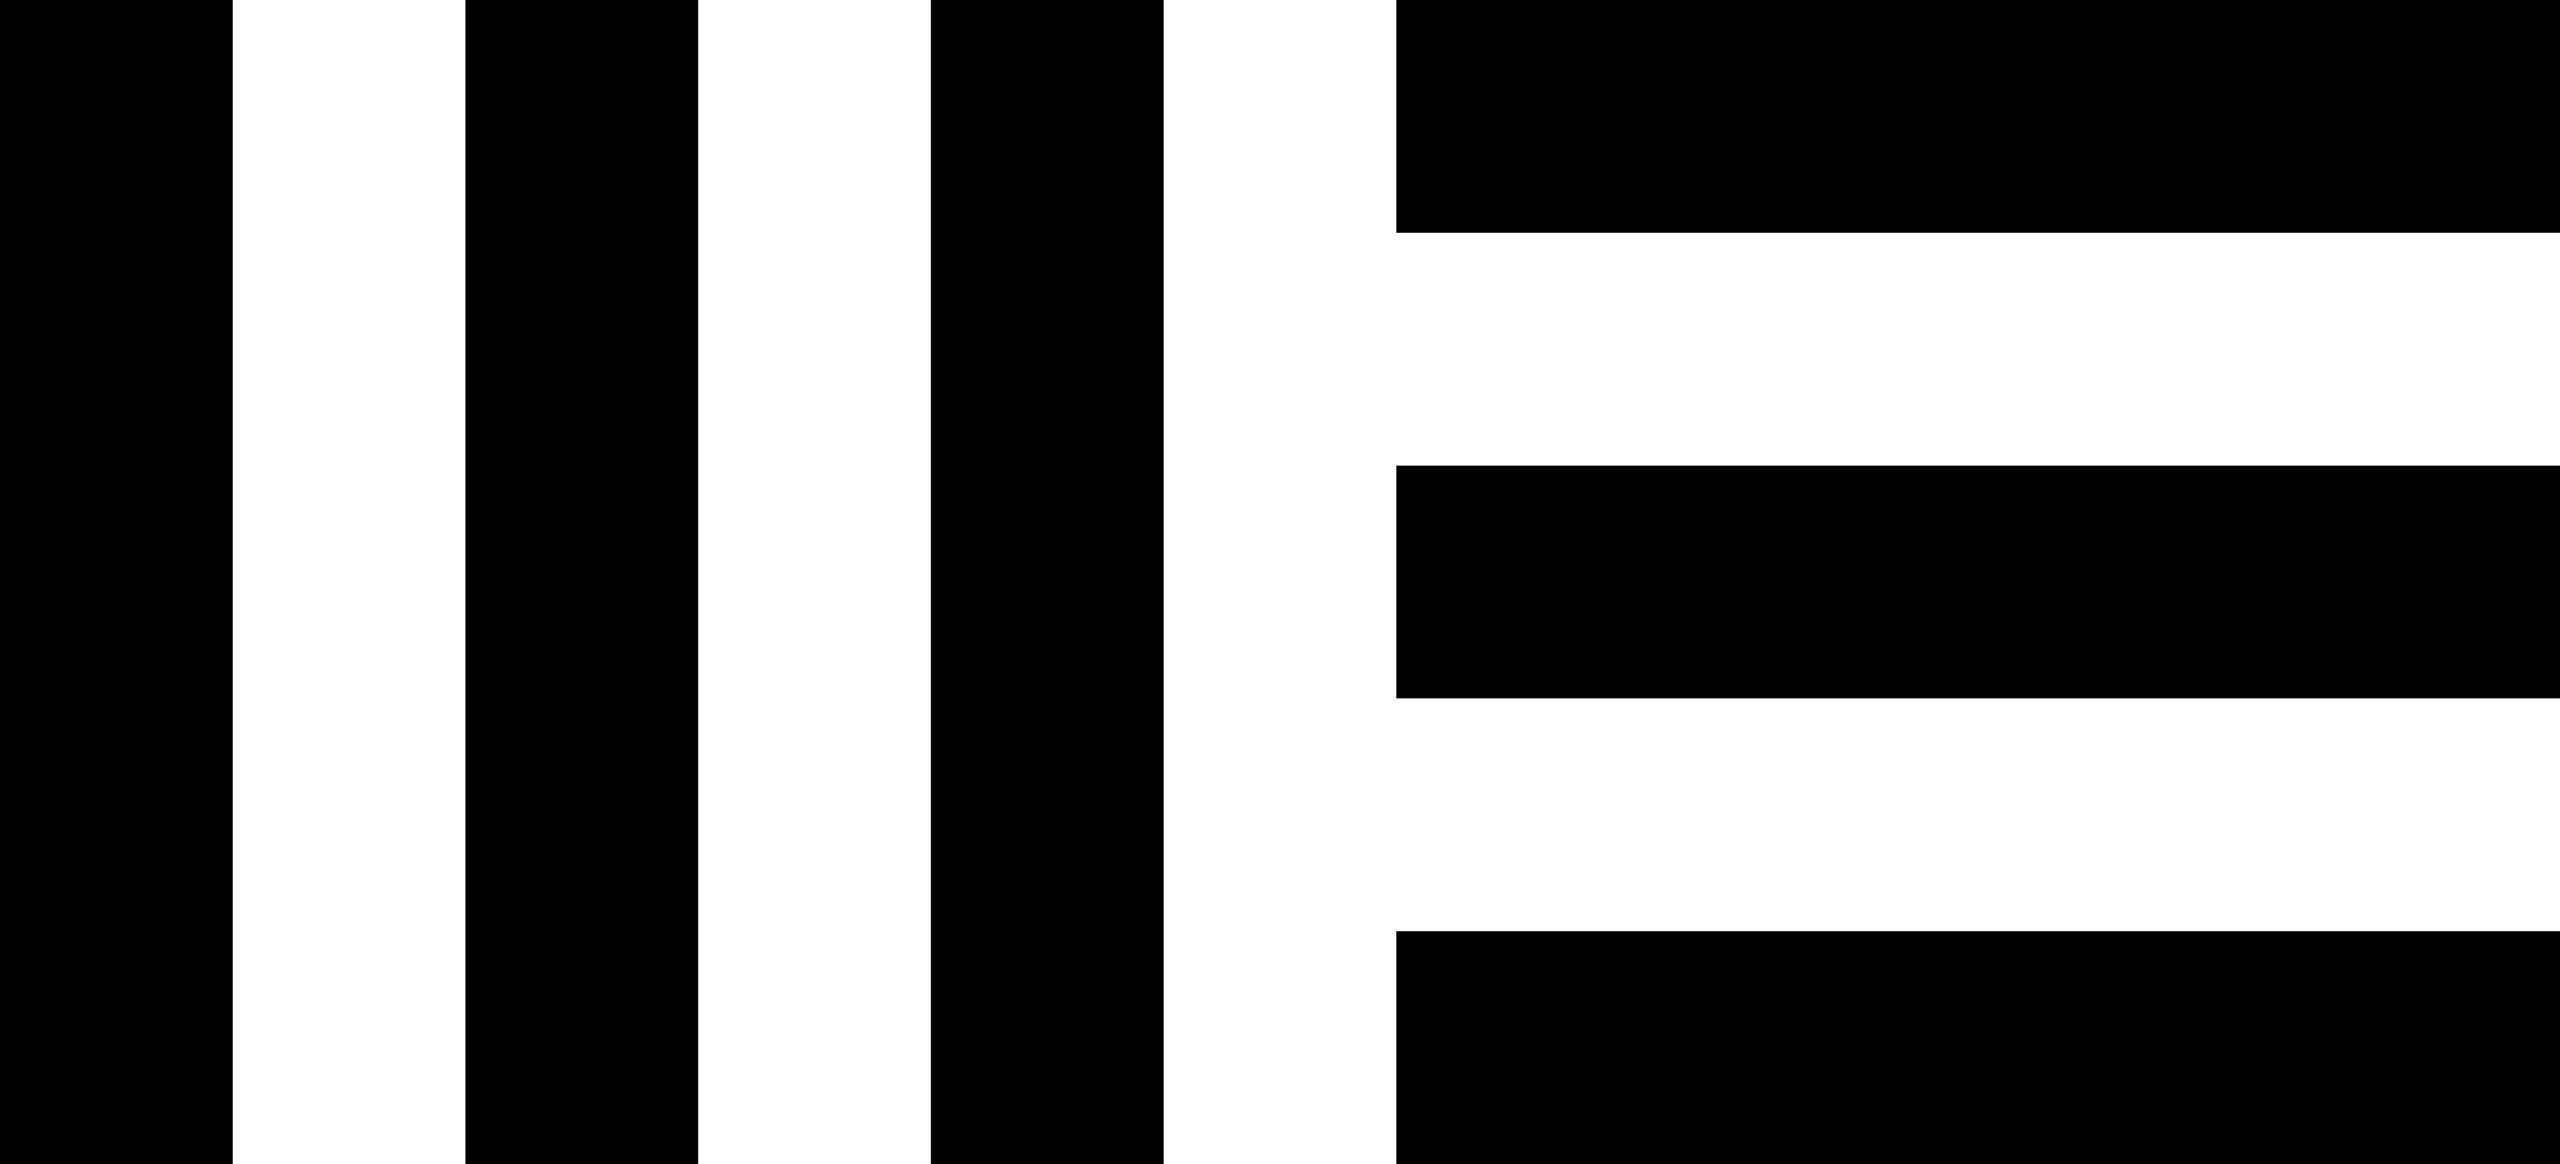 martin-ehmig-logo